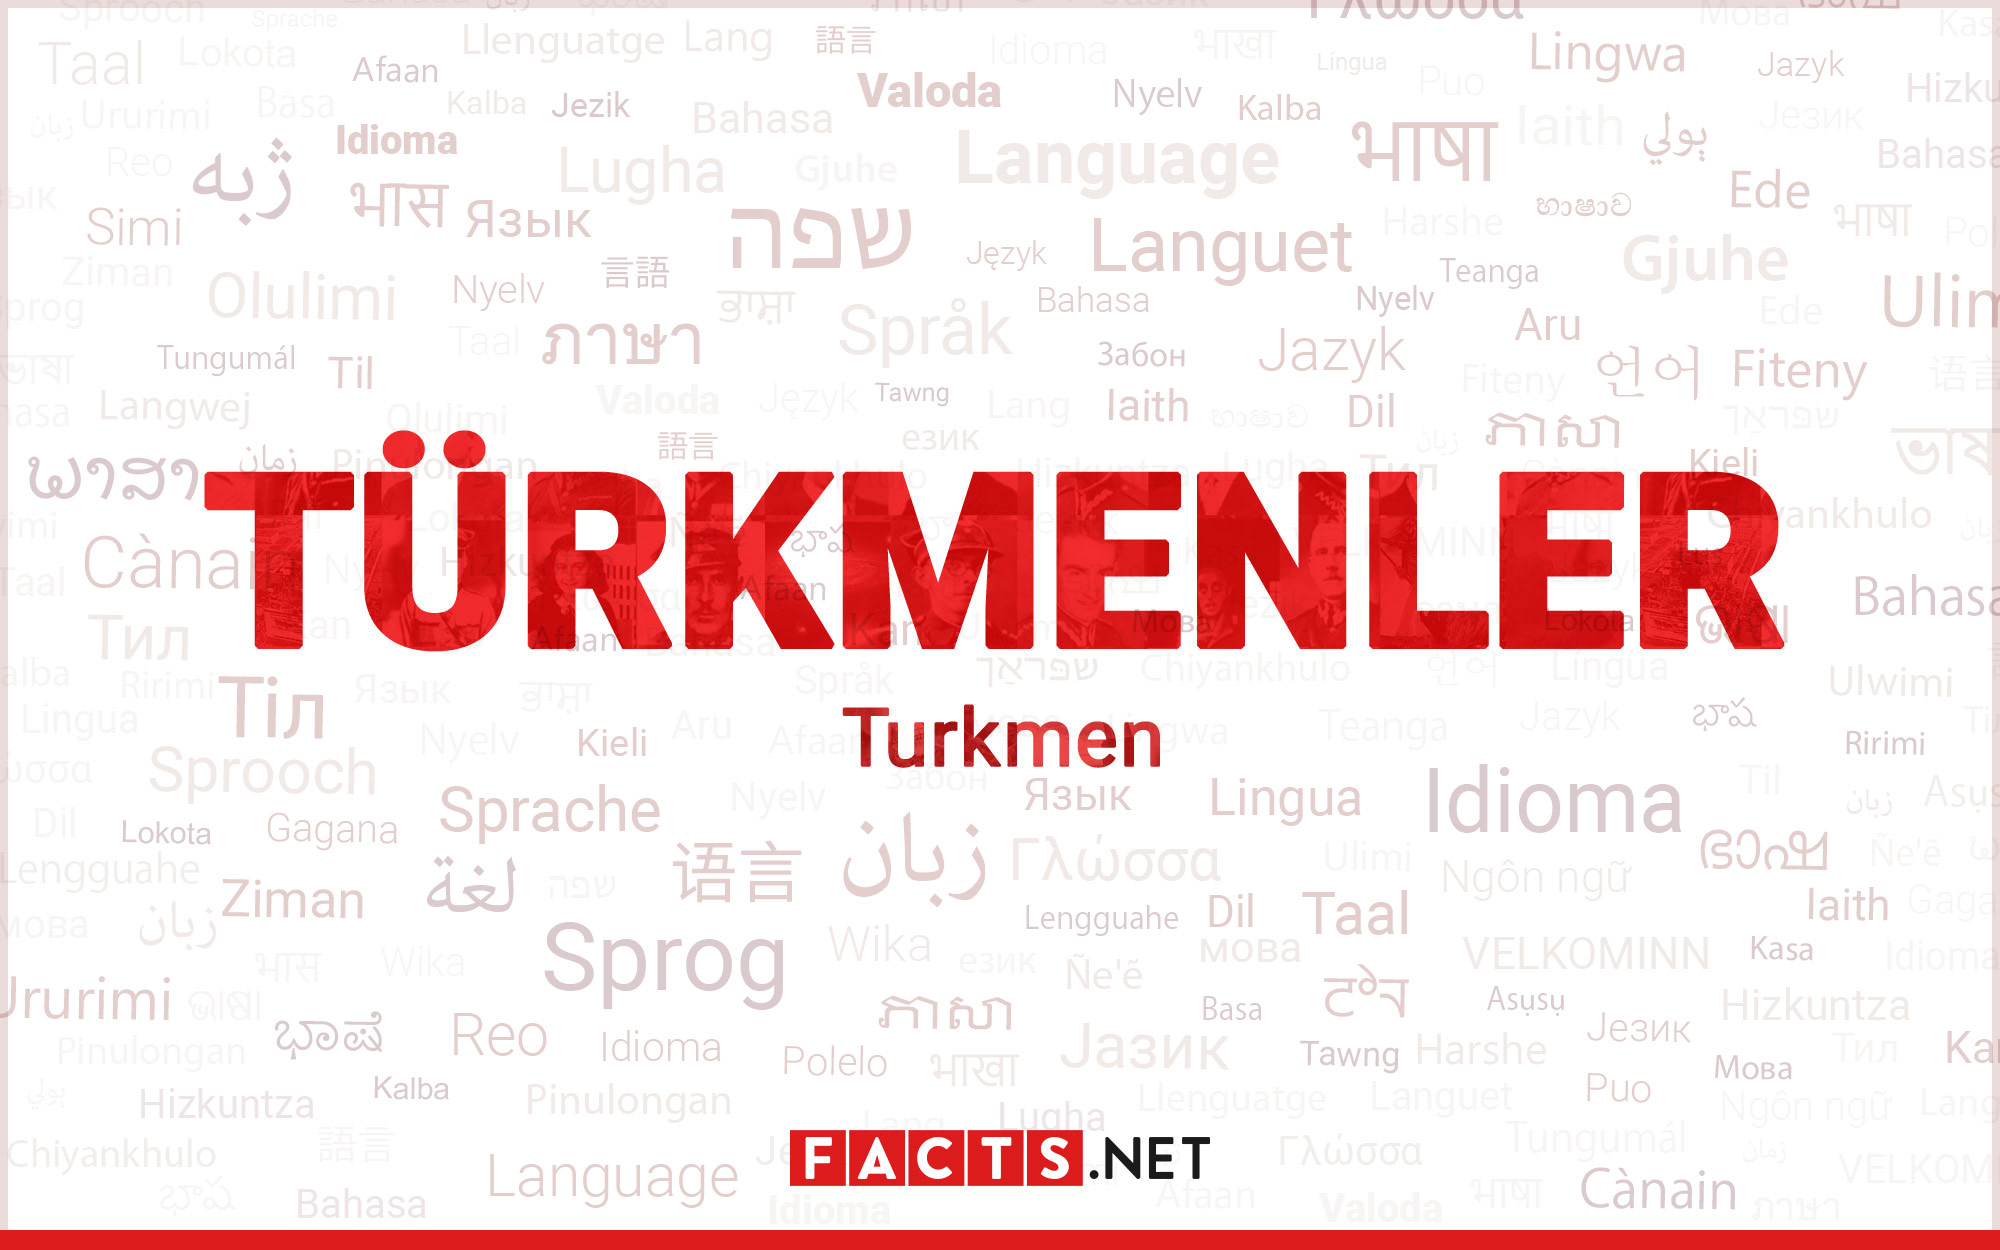 19-surprising-facts-about-turkmen-language